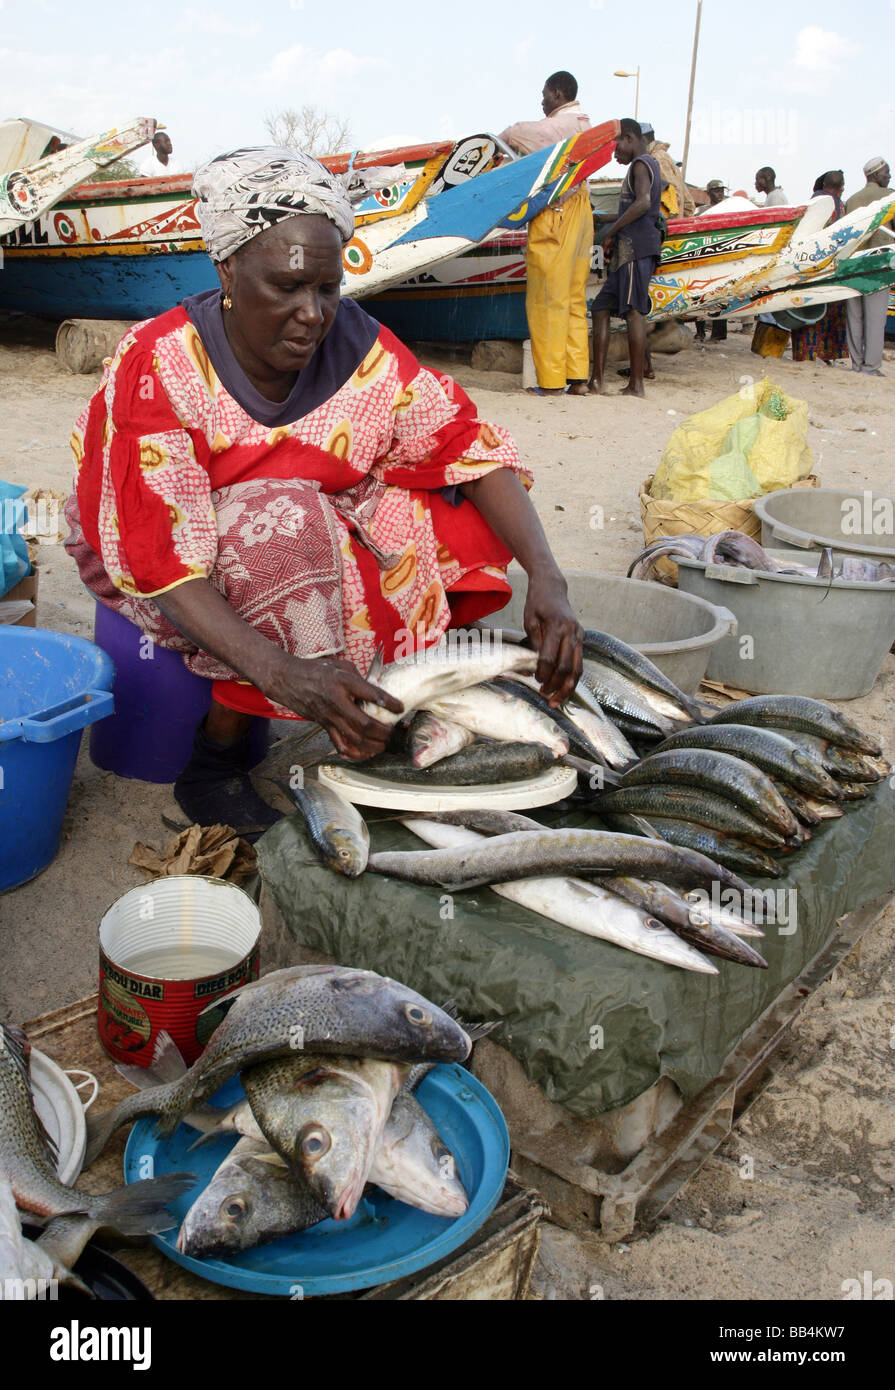 Woman selling fish at the fish market beach in Dakar, Senegal Stock Photo